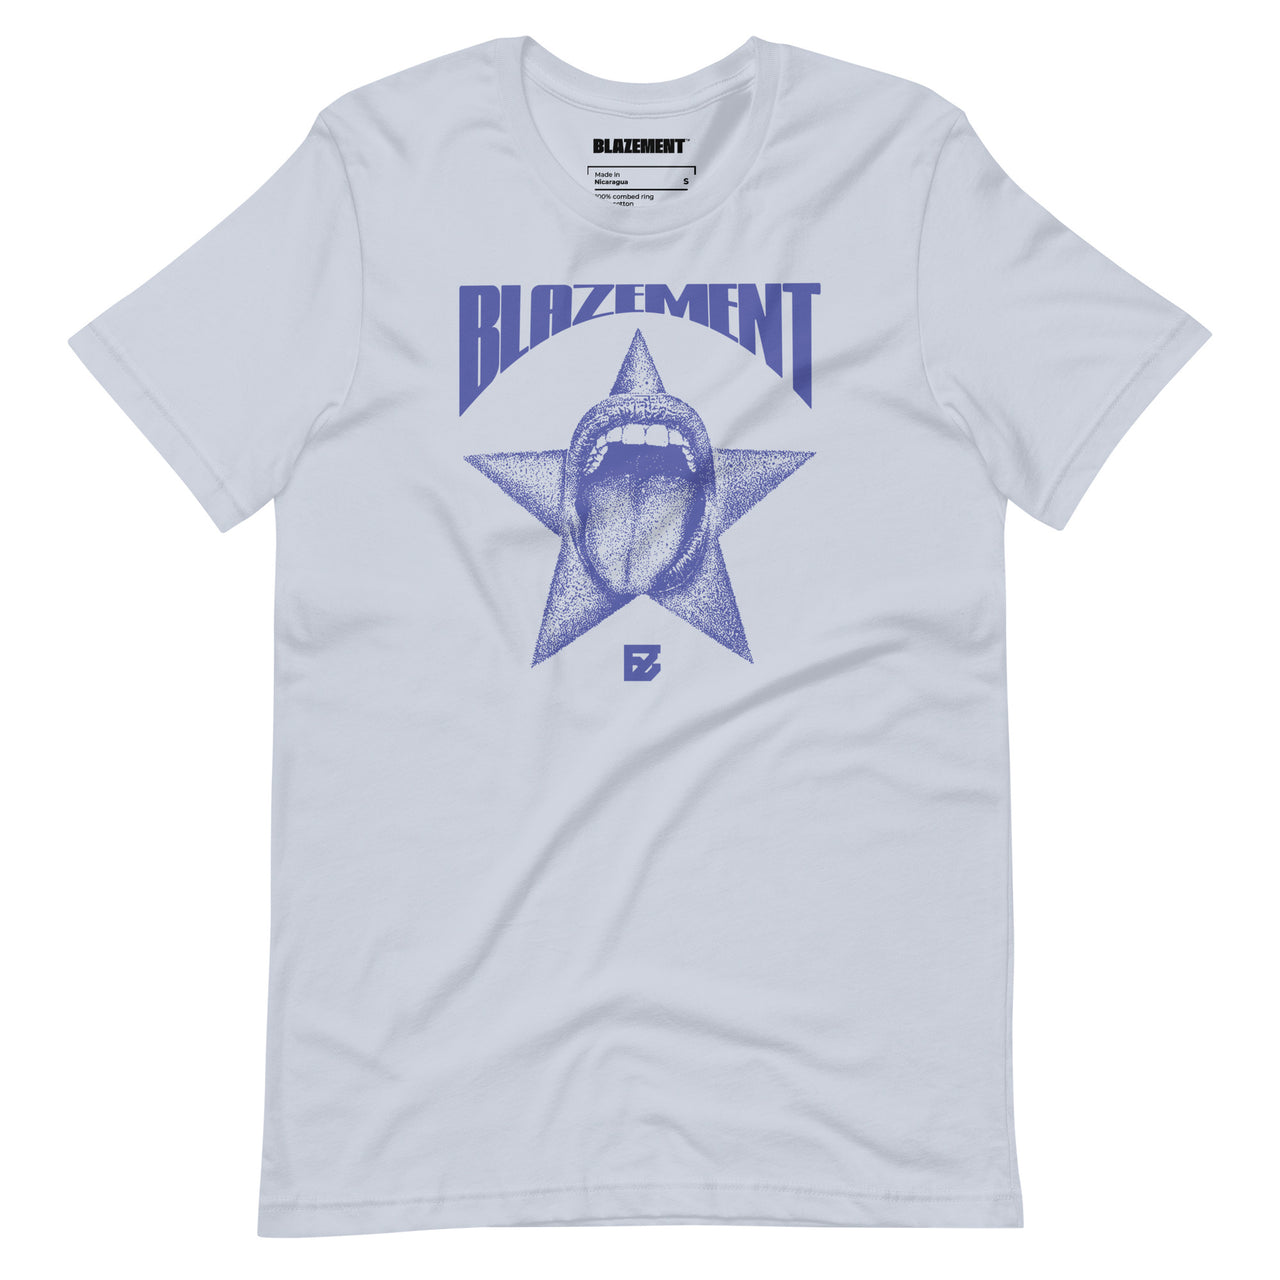 BLAZEMENT ROCKSTAR LIFE LIGHT BLUE T-SHIRT